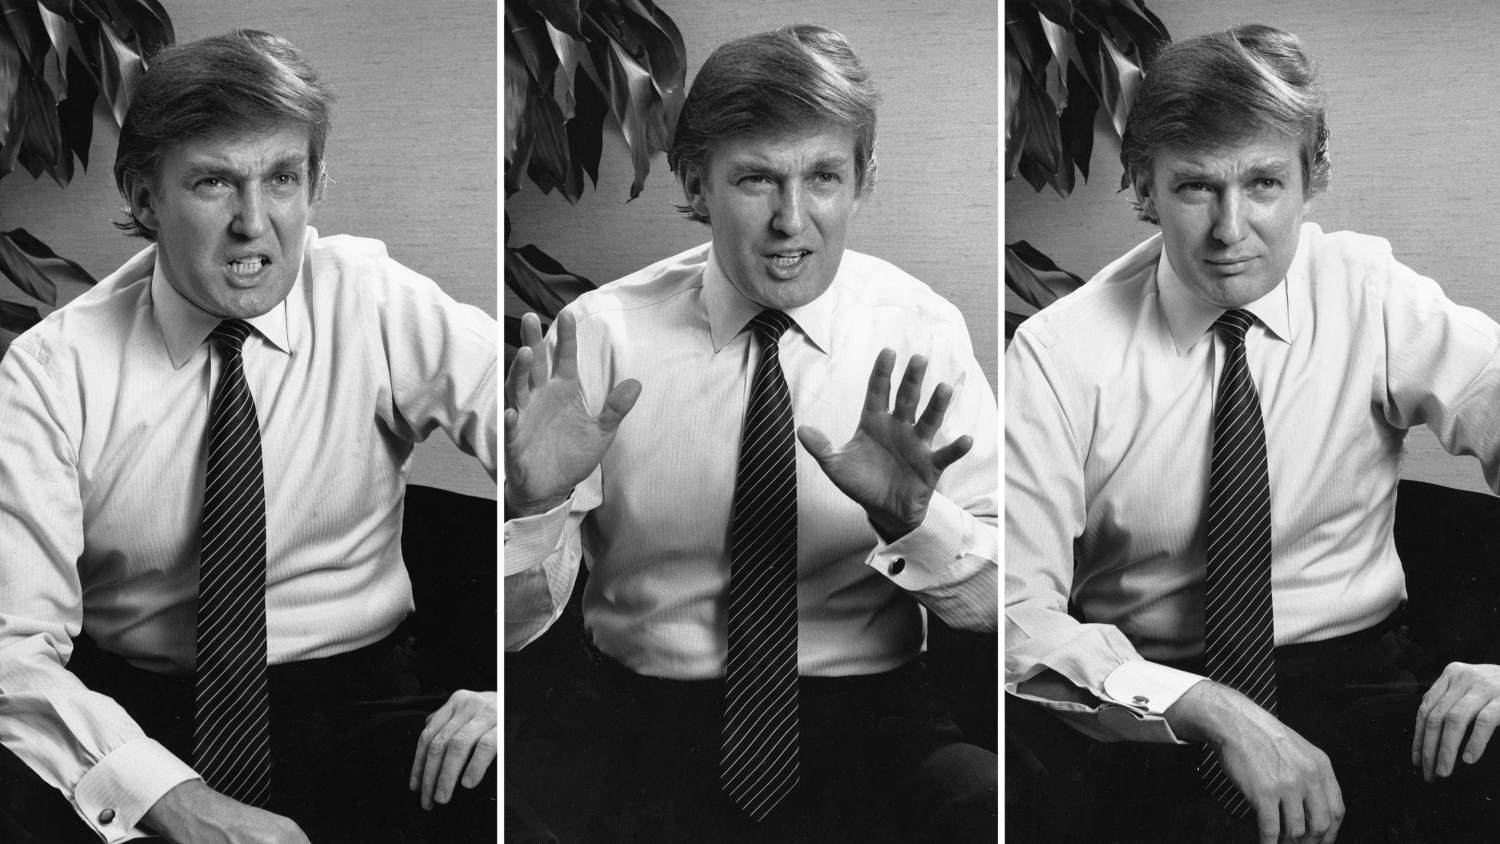 Best of Trump playboy photos